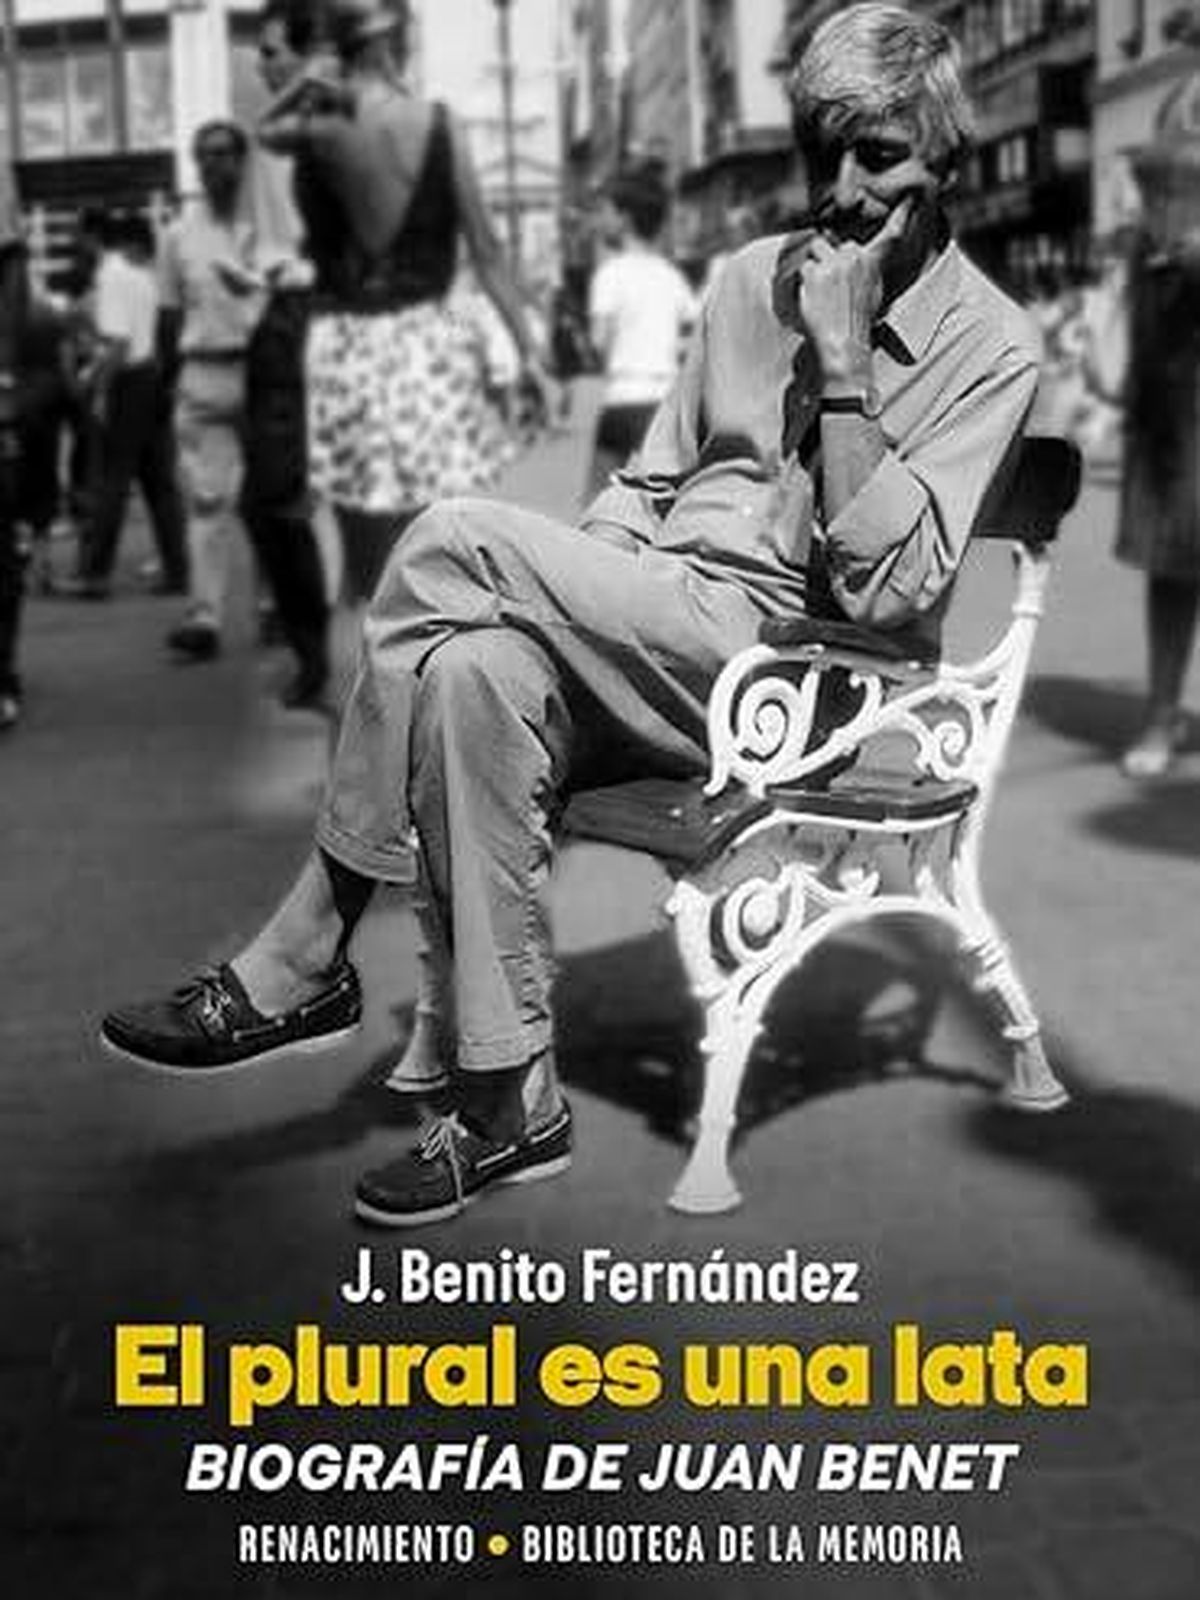 Portada de 'El plural es una lata', la biografía de Juan Benet escrita por J. Benito Fernández.